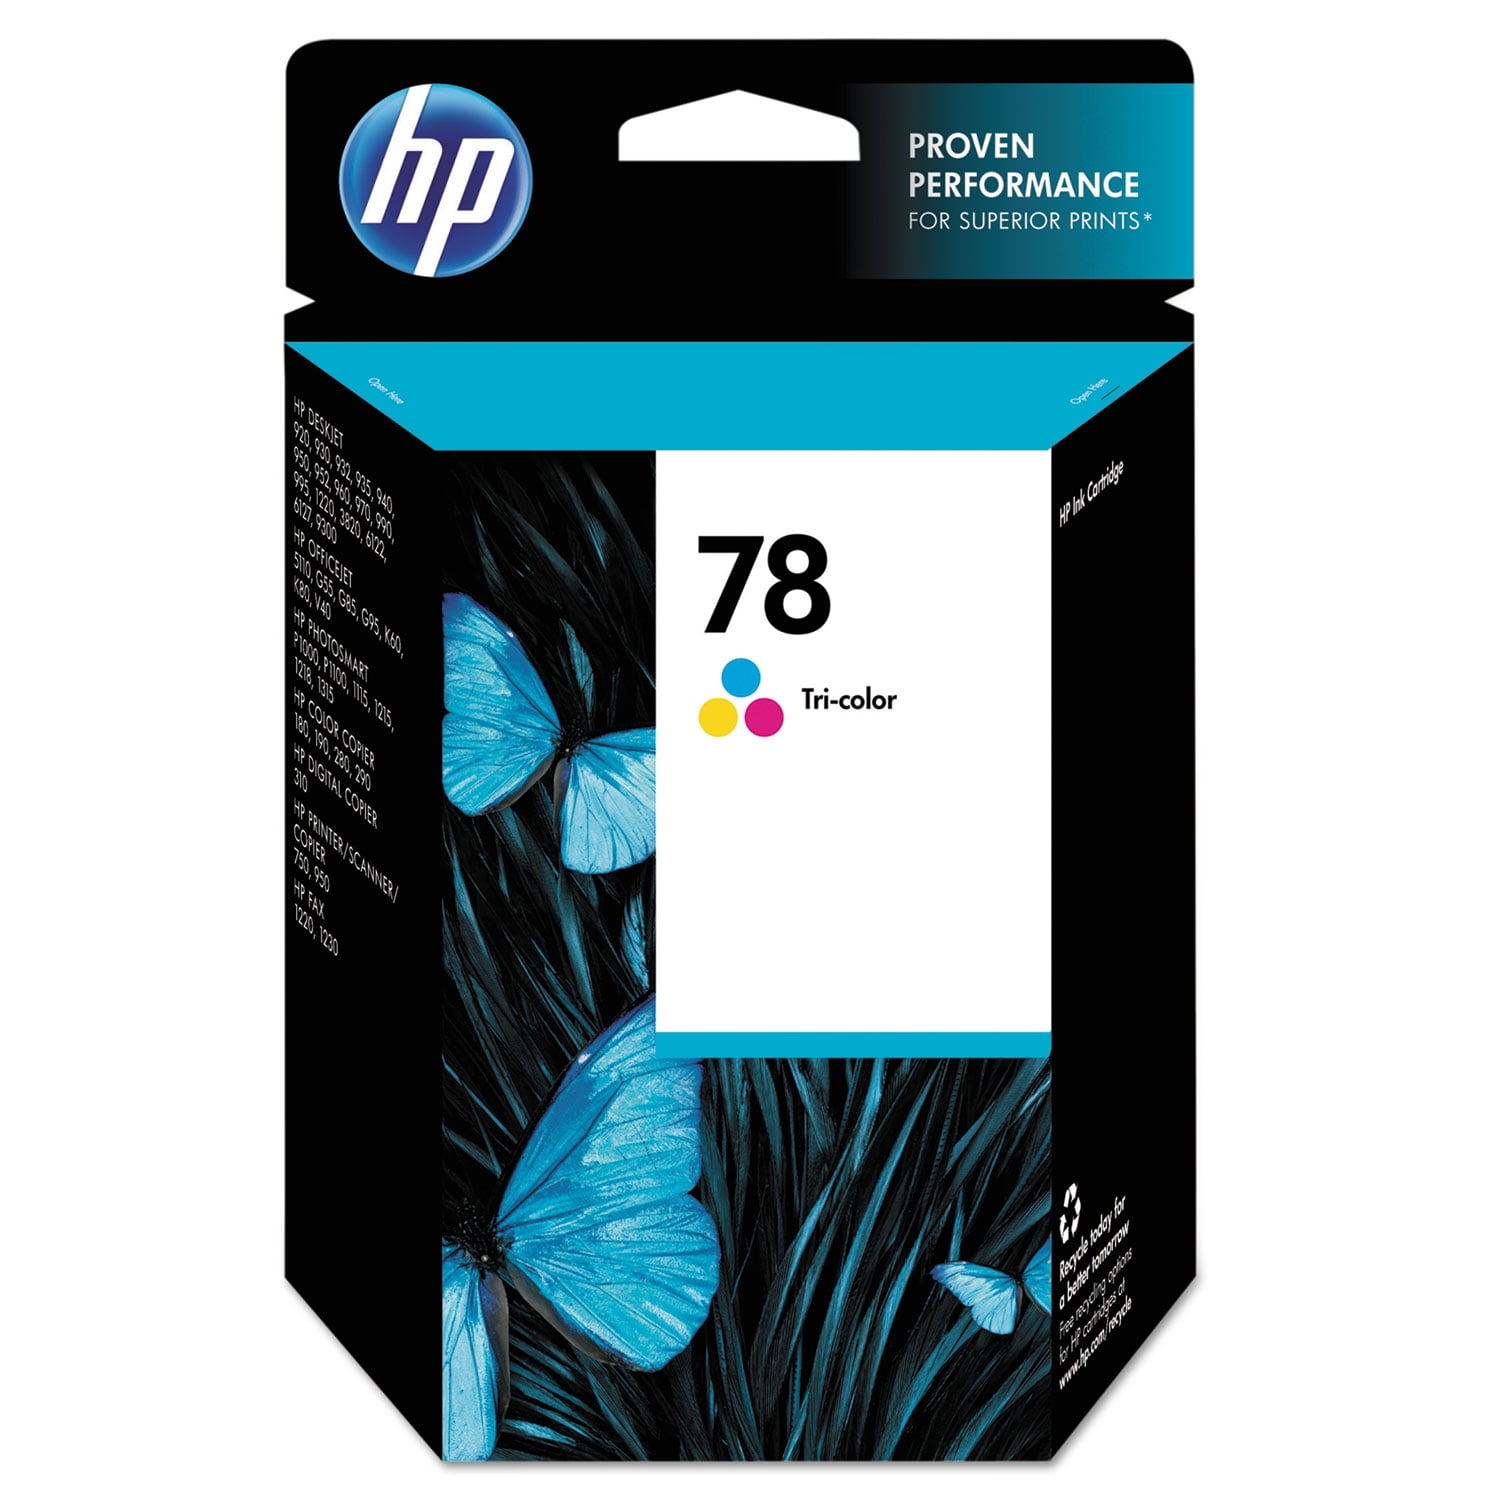 Antagonist Aftrekken Ik wil niet HP 78 Ink Cartridge, Tri-color (C6578DN) - Walmart.com